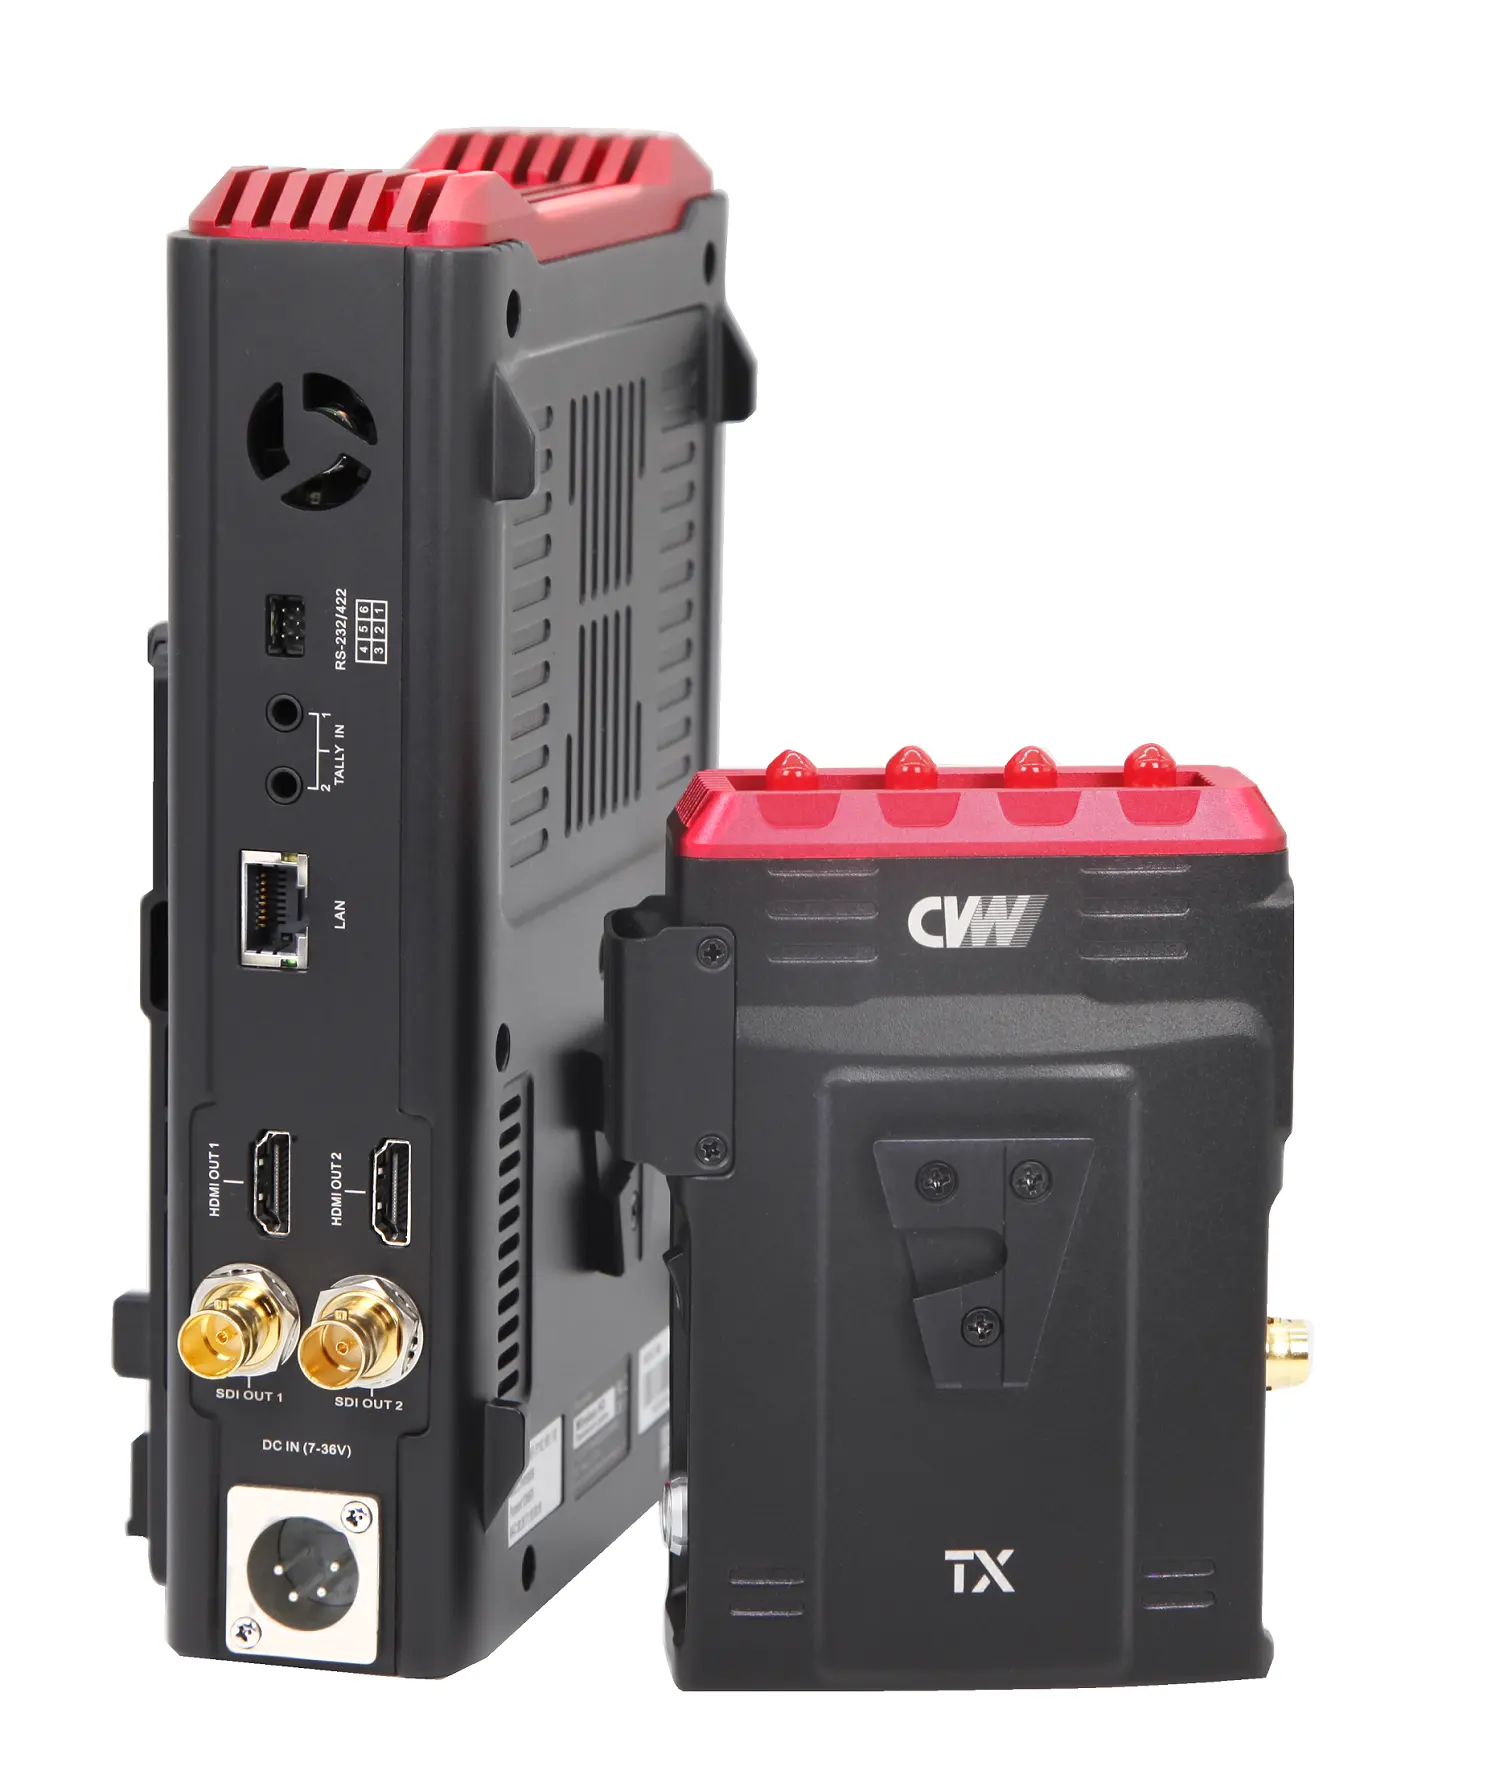 Venda quente CVW Beamlink Duo Plus multi câmera baixa latência transmissor de vídeo sem fio e receptor para transmissão ao vivo esporte jogo